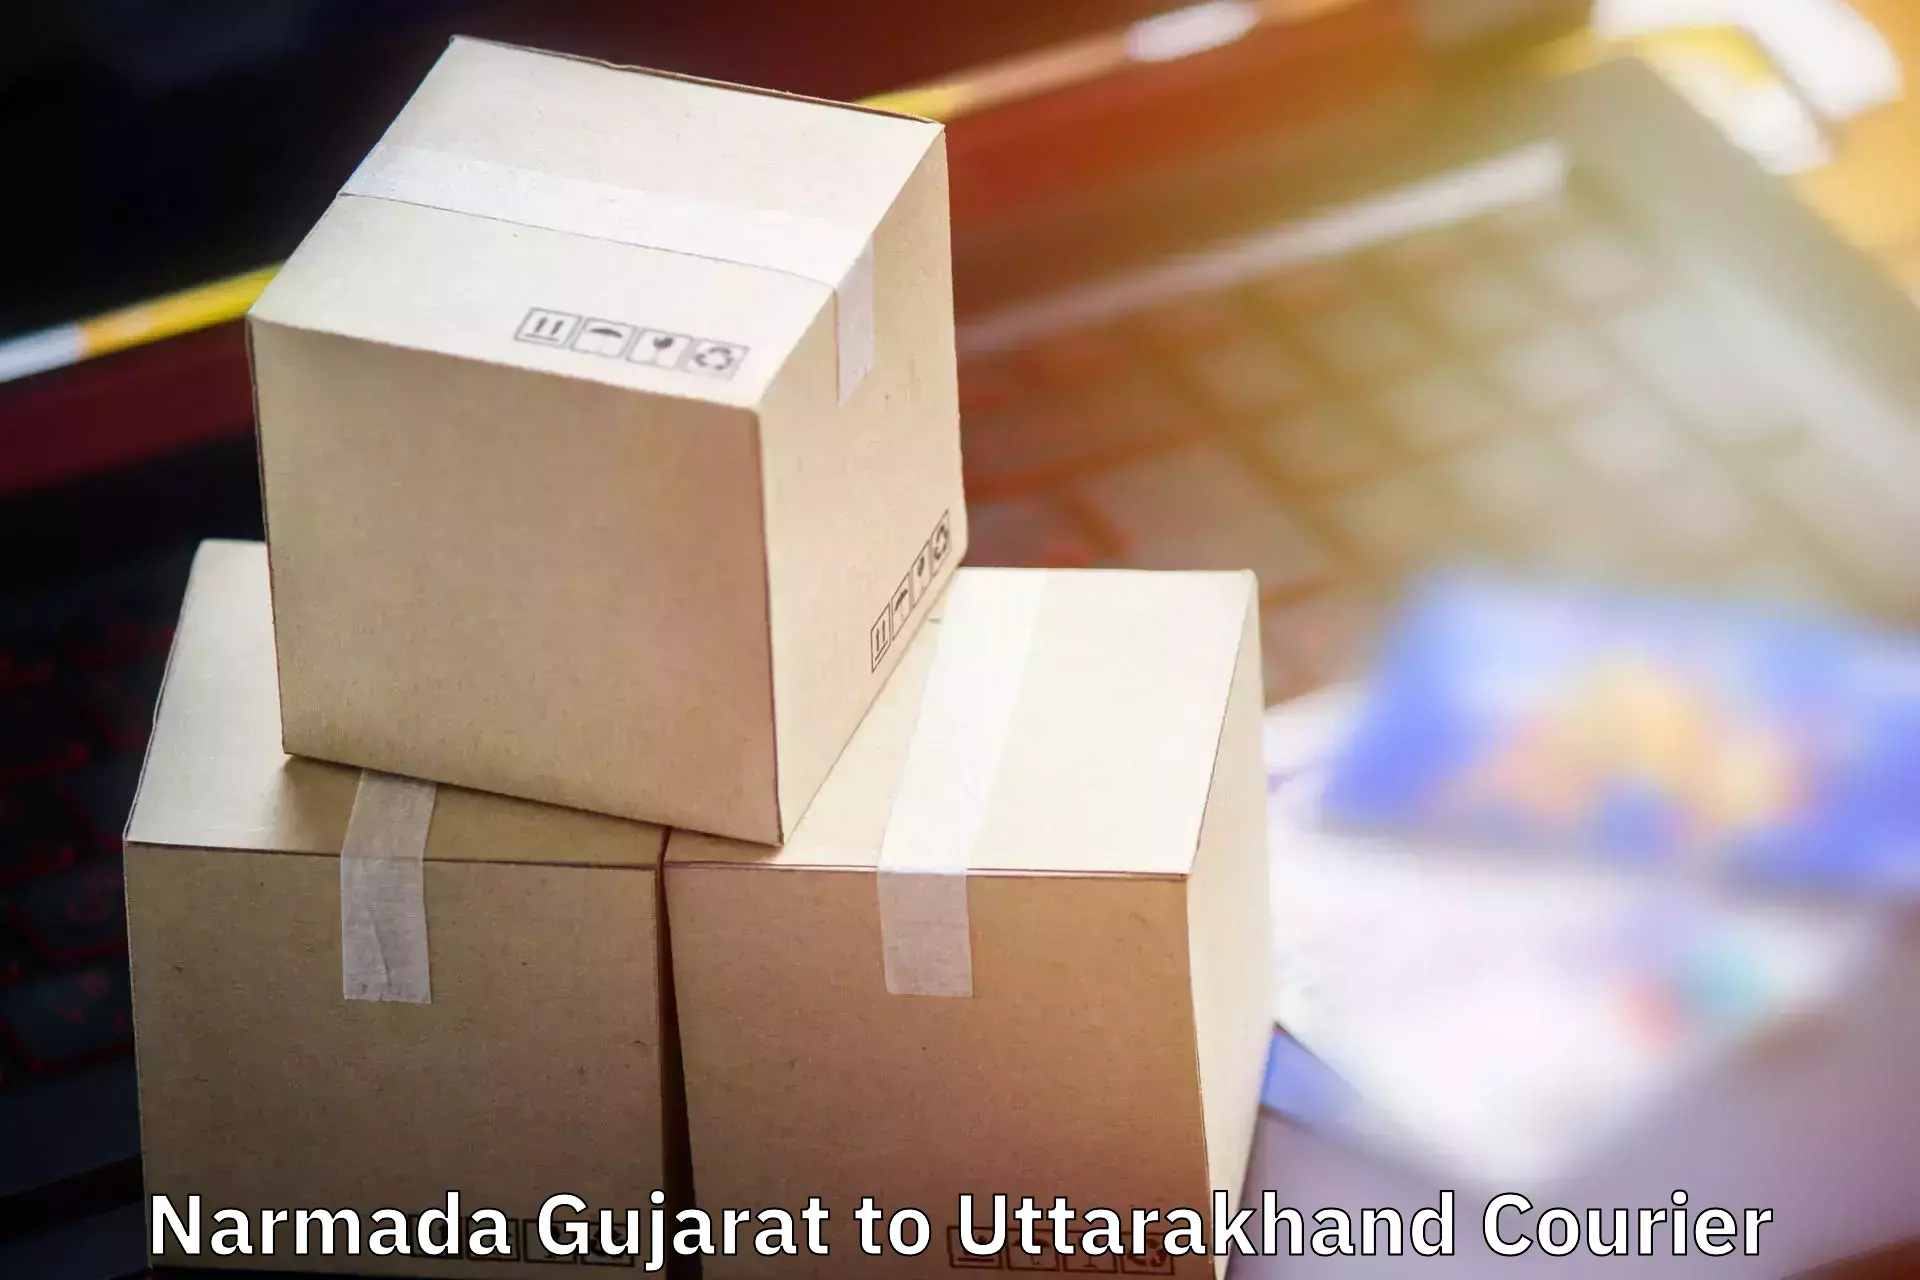 Baggage shipping schedule Narmada Gujarat to Lansdowne